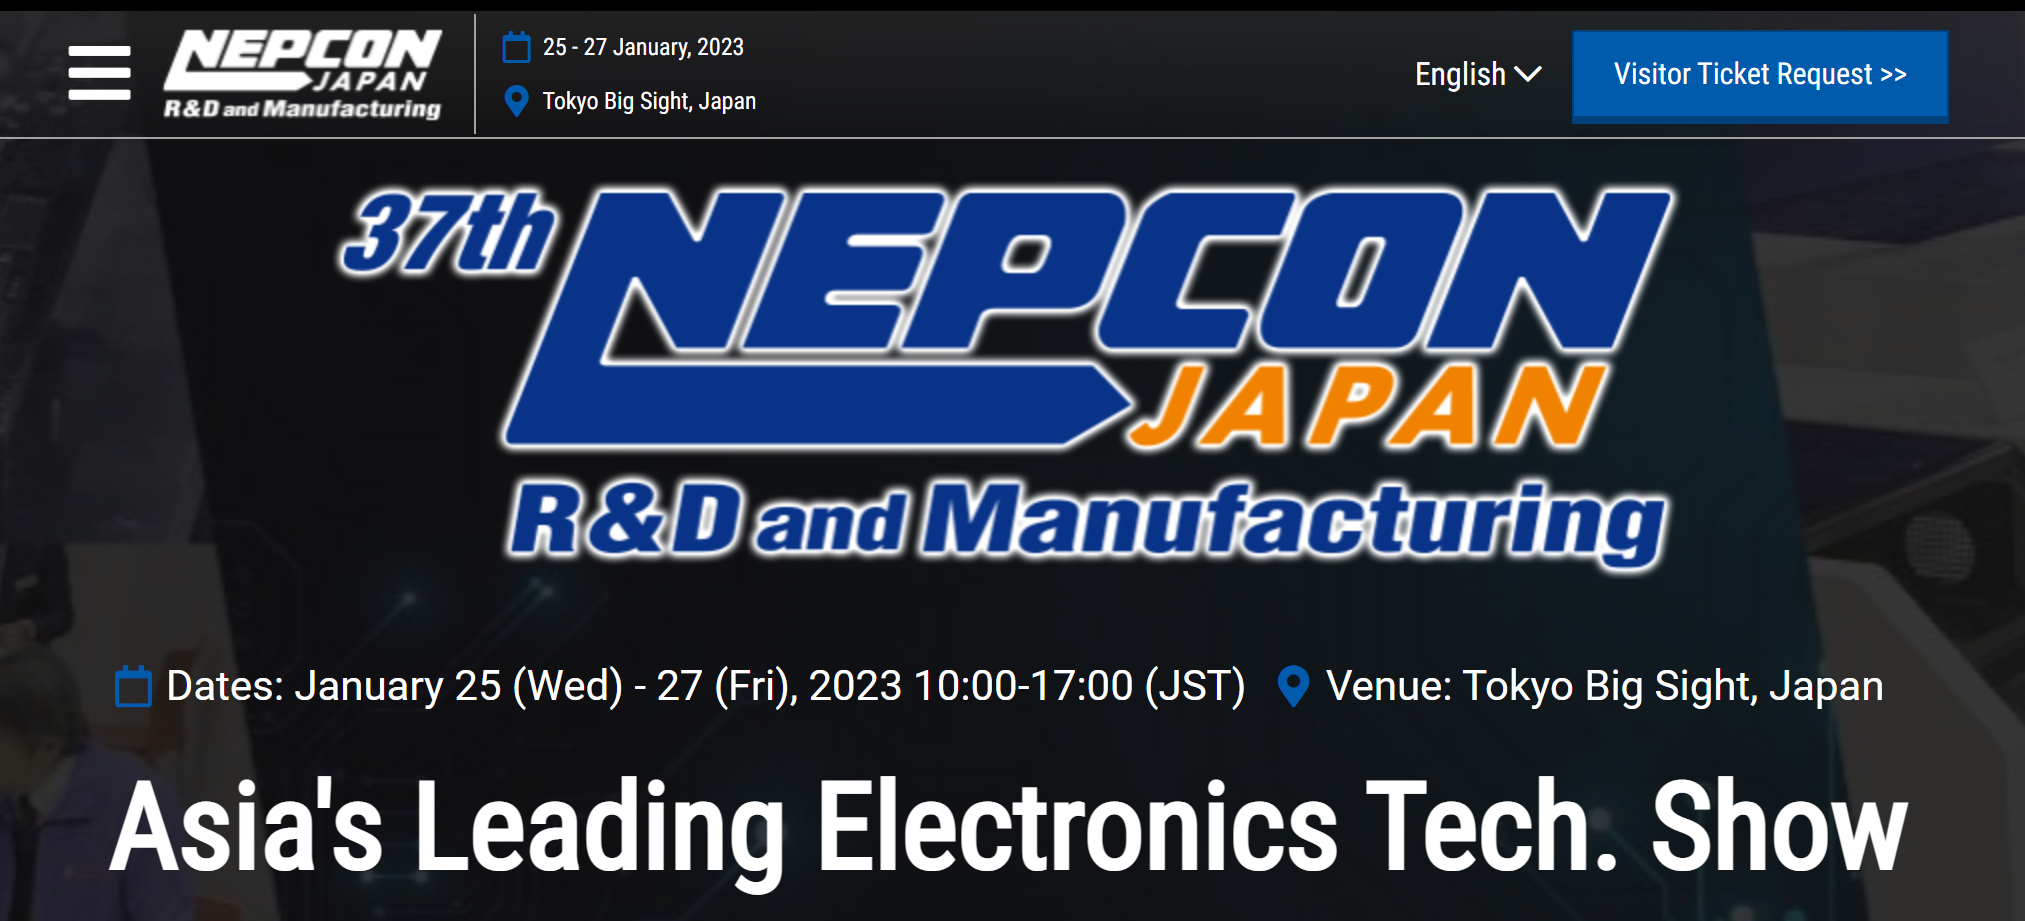 NEPCON JAPAN 2023 第 37 届日本国际电子制造暨微电子工业展